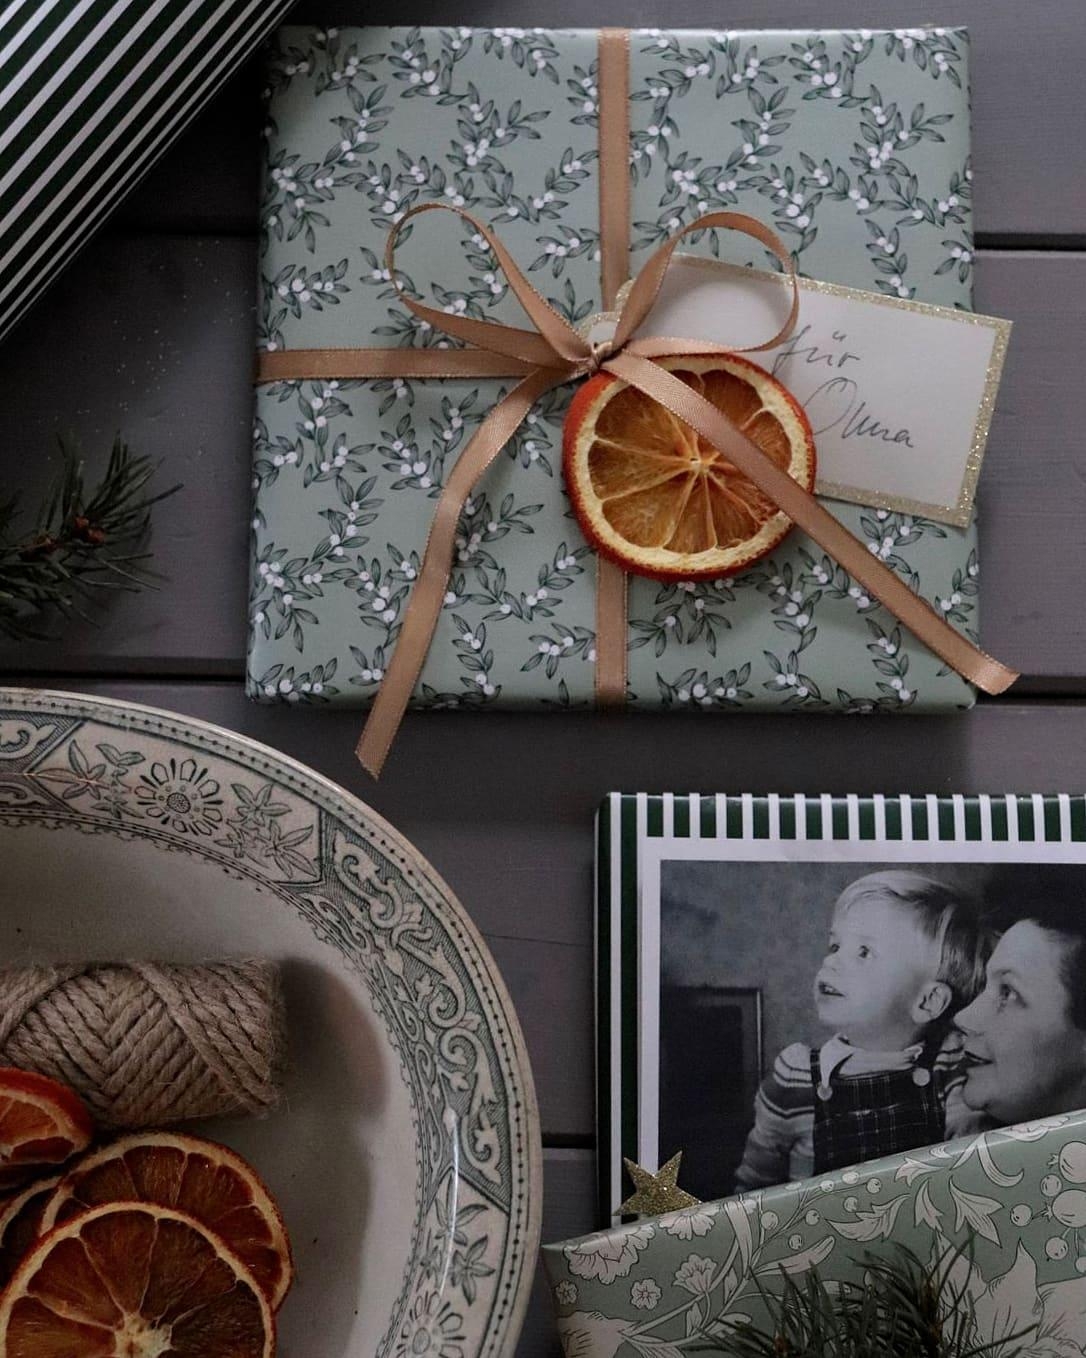 Geschenkverpackung mit Nostalgie Touch #brittabloggt #christmas #giftwrapping